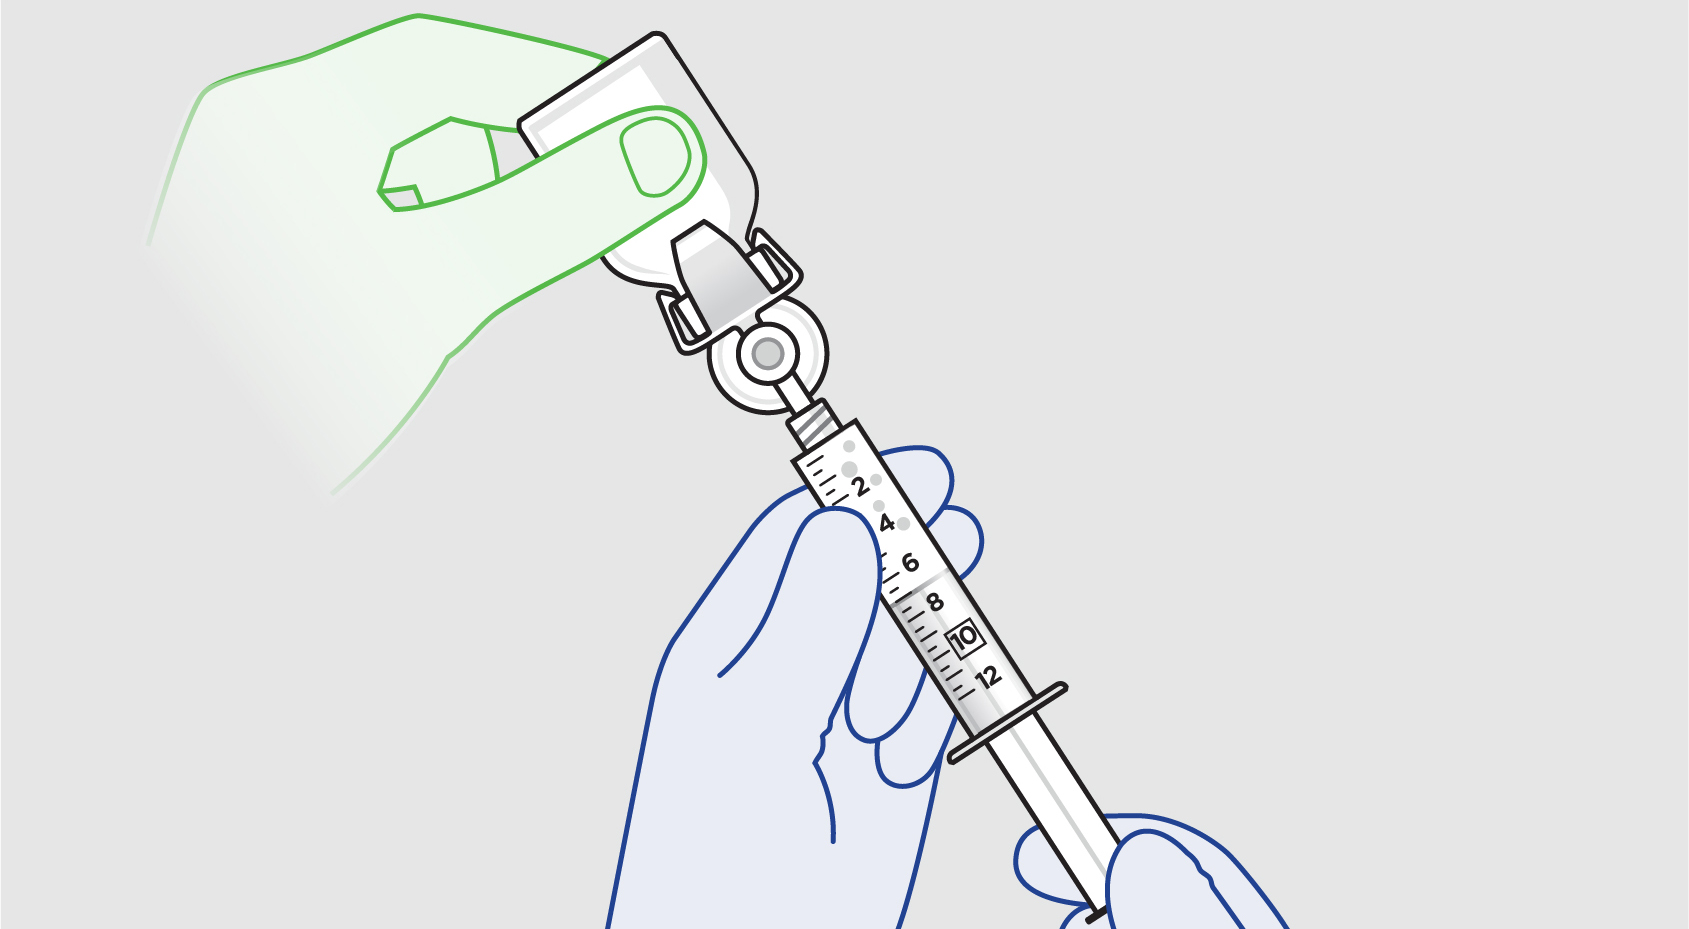 Green “nonsterile” hand inverting the ZYNRELEF vial with blue “sterile” hands withdrawing ZYNRELEF into syringe.